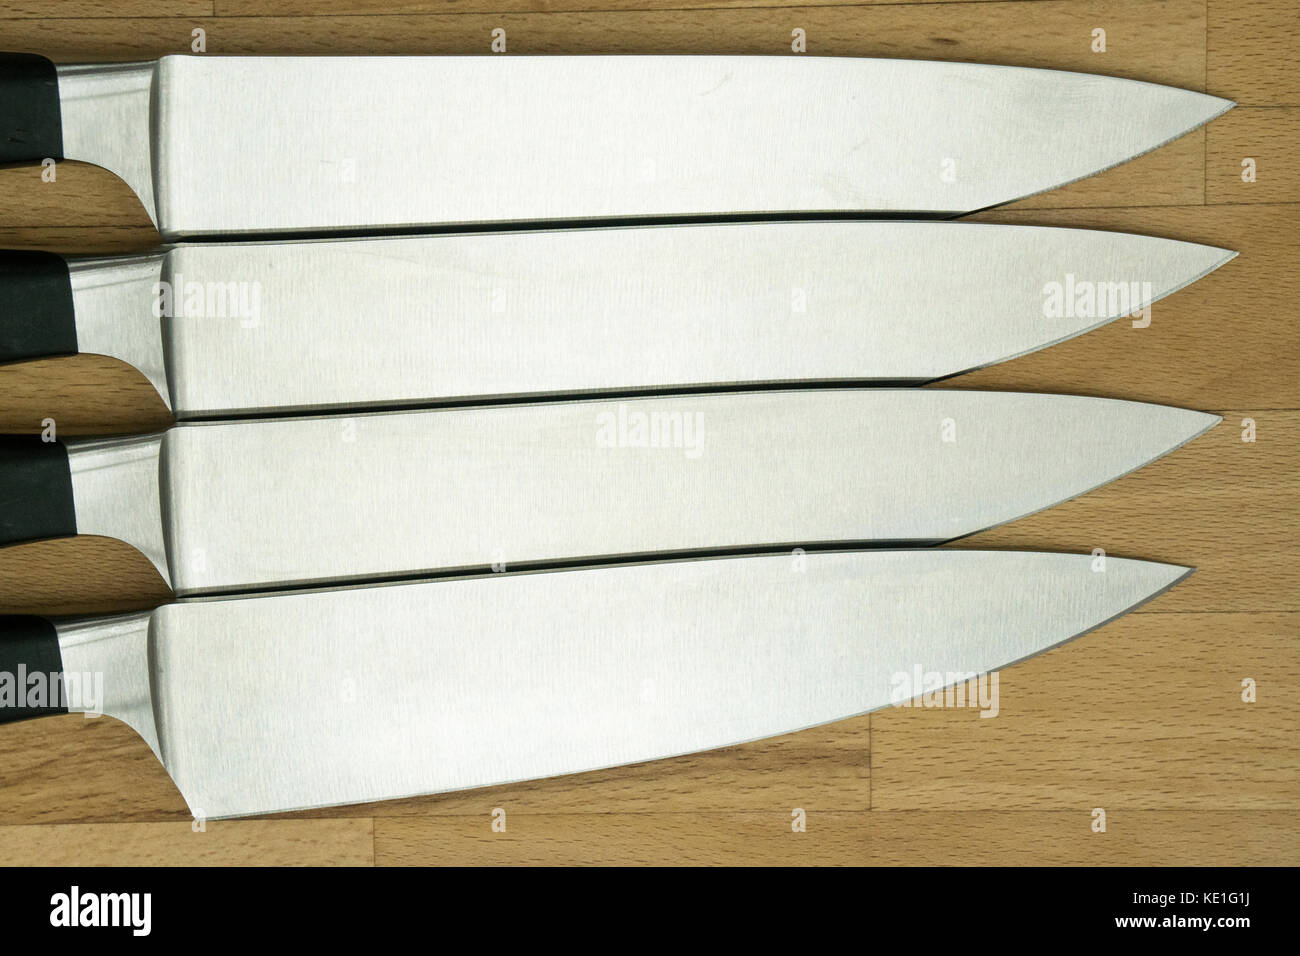 Vier identische Küche Messer auf einer hölzernen Arbeit top Stockfoto